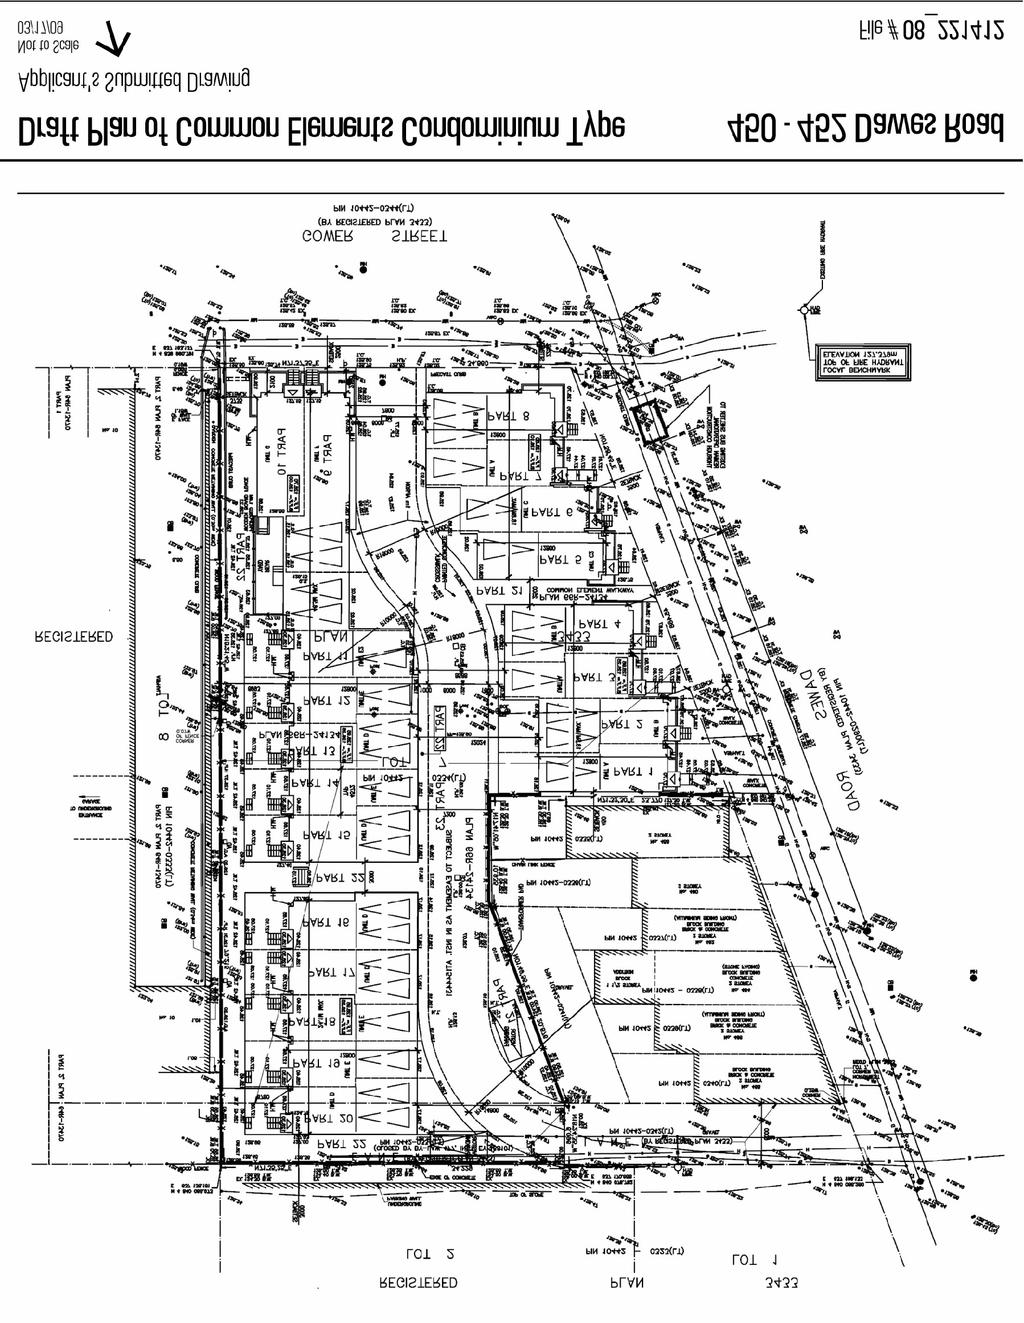 Attachment 1: Draft Plan of Common Elements Condominium